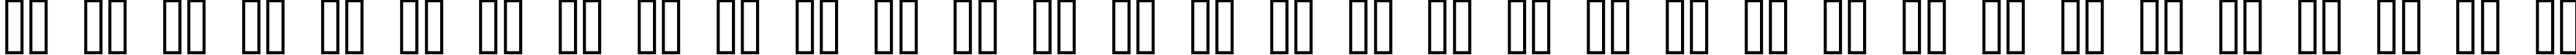 Пример написания русского алфавита шрифтом kroeger 06_66